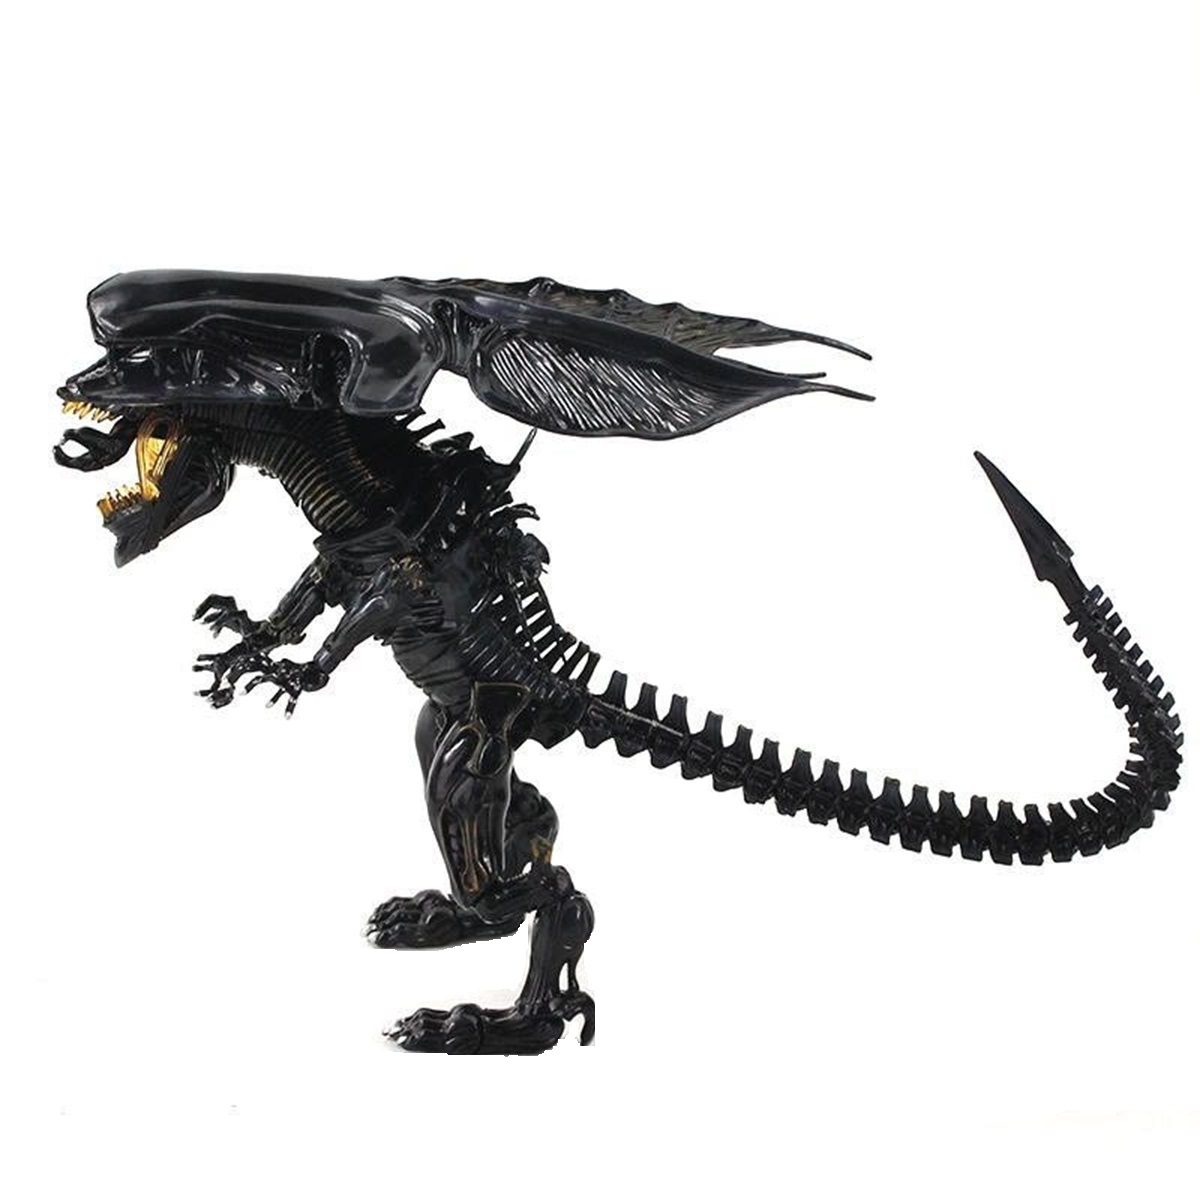 اکشن فیگور مدل  آلینس ملکه طرح Aliens Hybrid Metal Figuration کد 047